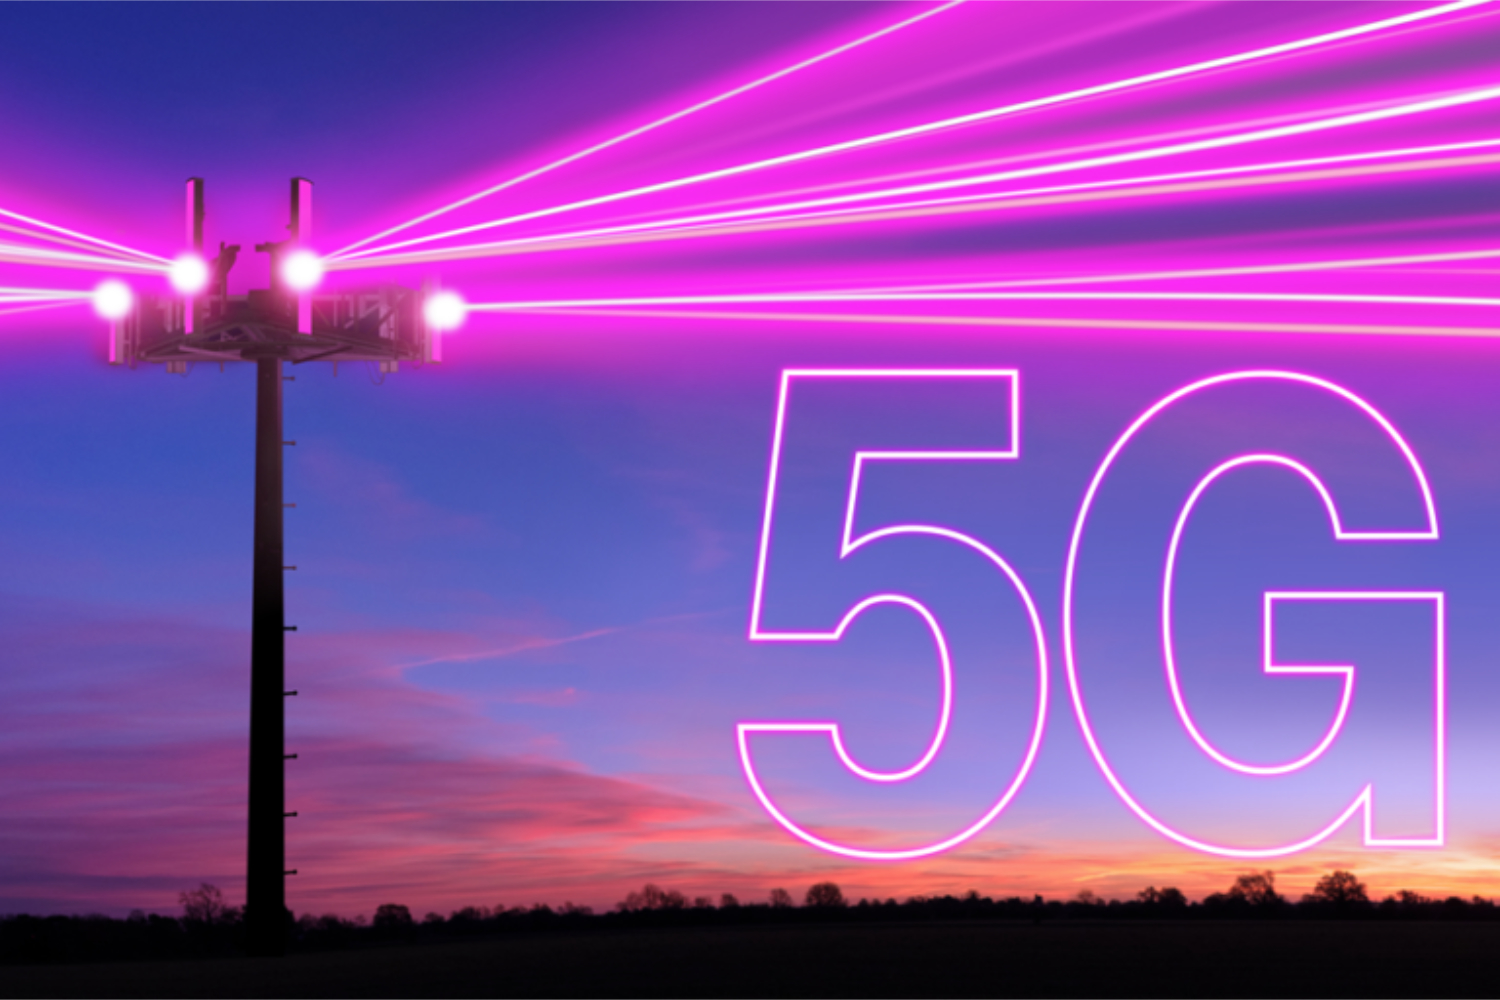 移动电话塔向外射出粉色光束，旁边是一个5G标志